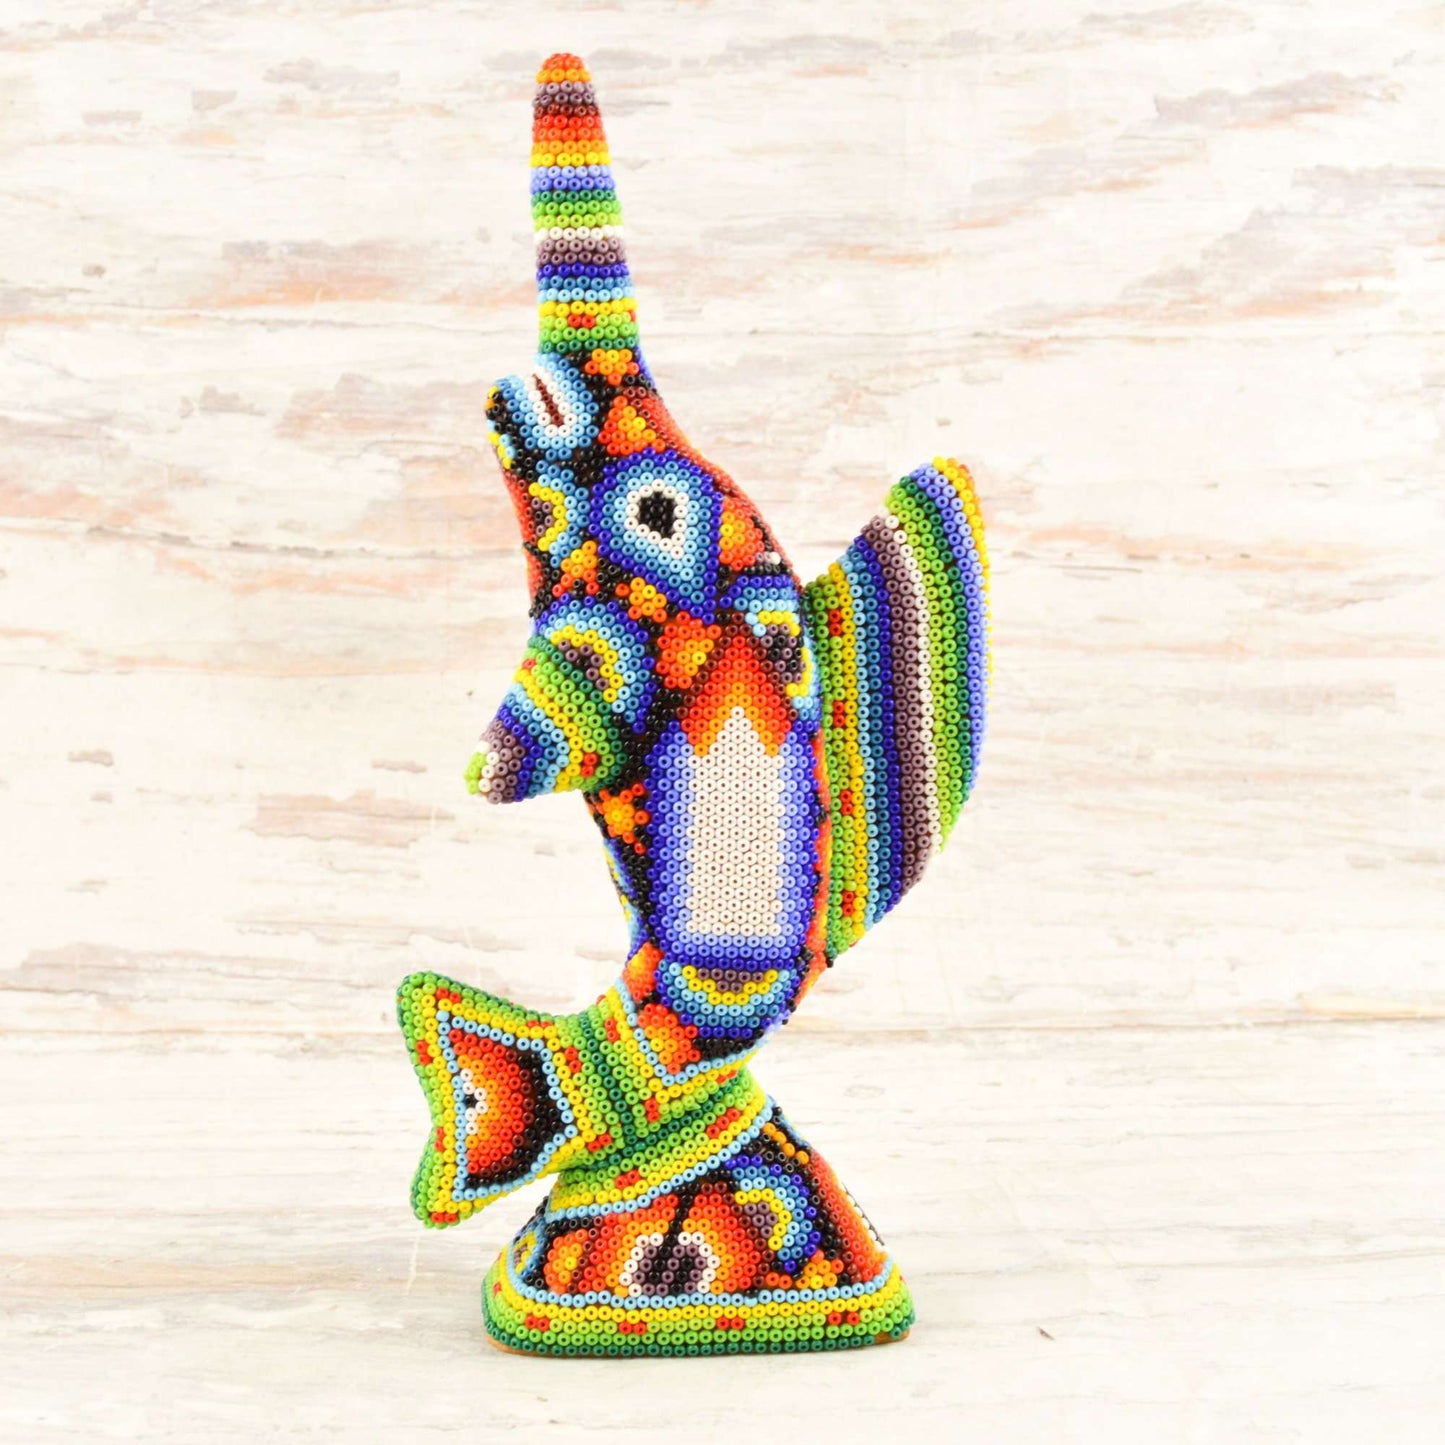 Sailfish Huichol Art - Alebrije Huichol Mexican Folk art magiamexica.com